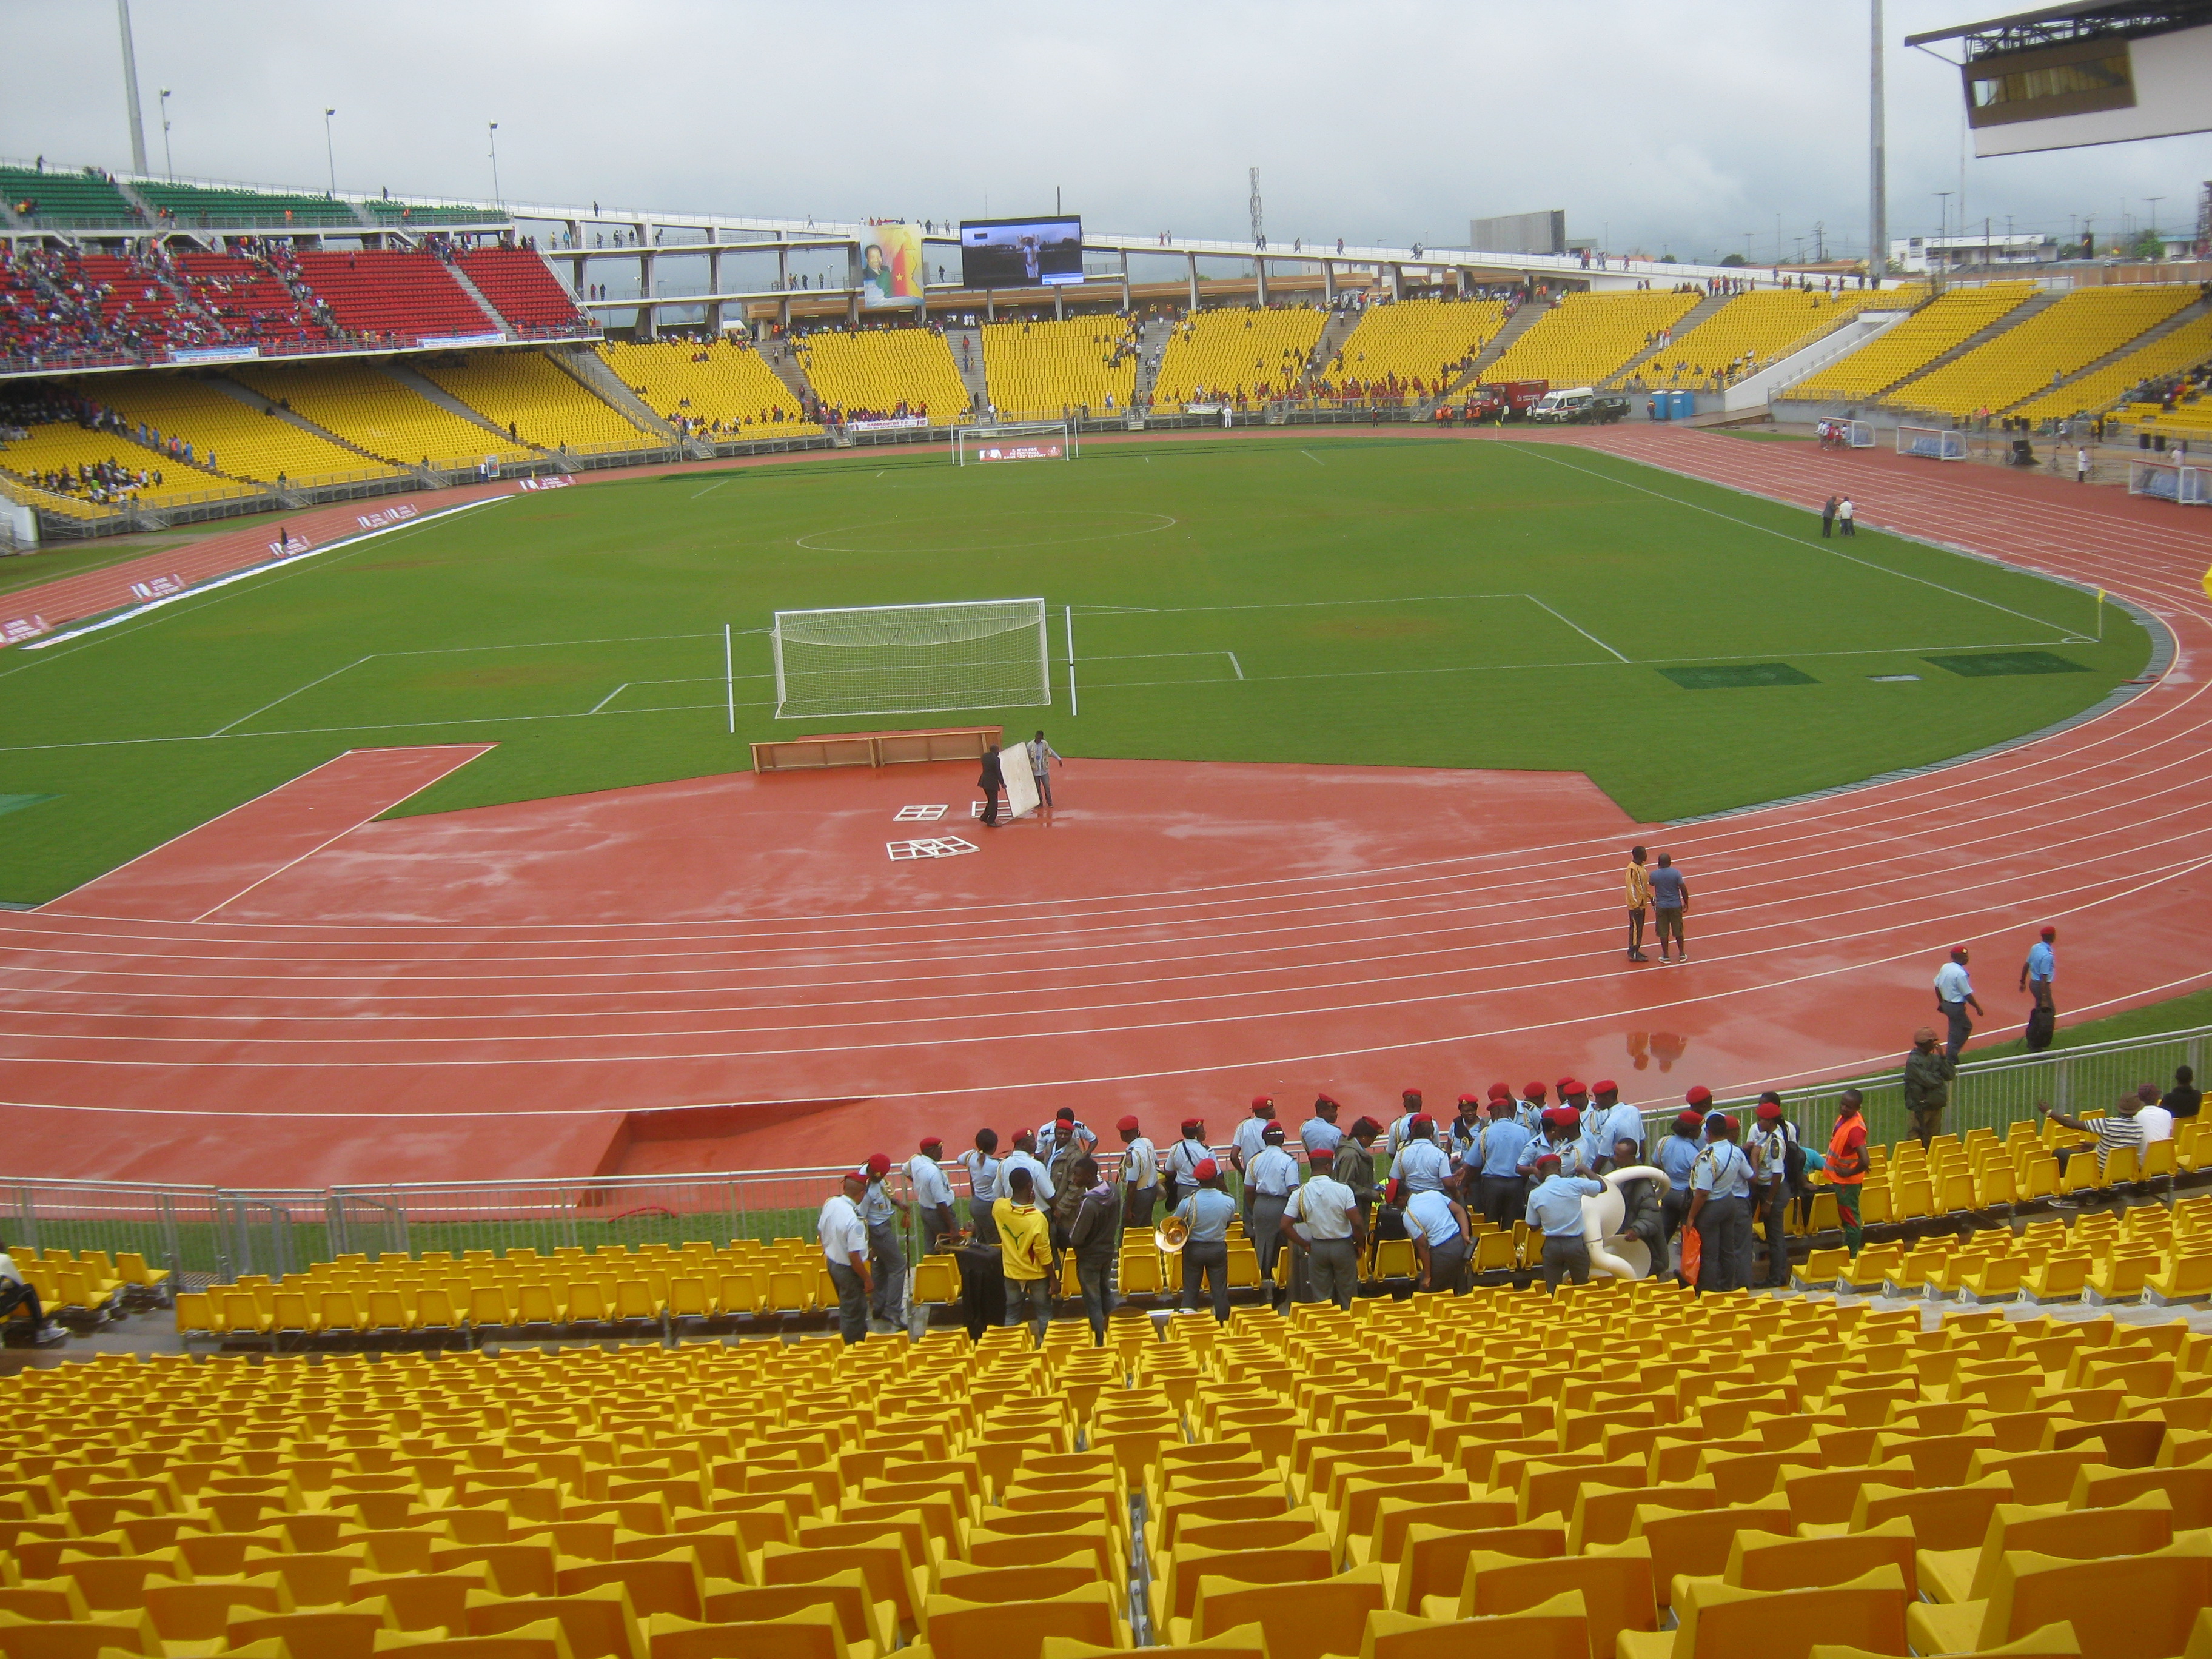 Stade_Omnisports_Ahmadou_Ahidjo_Yaoundé_01